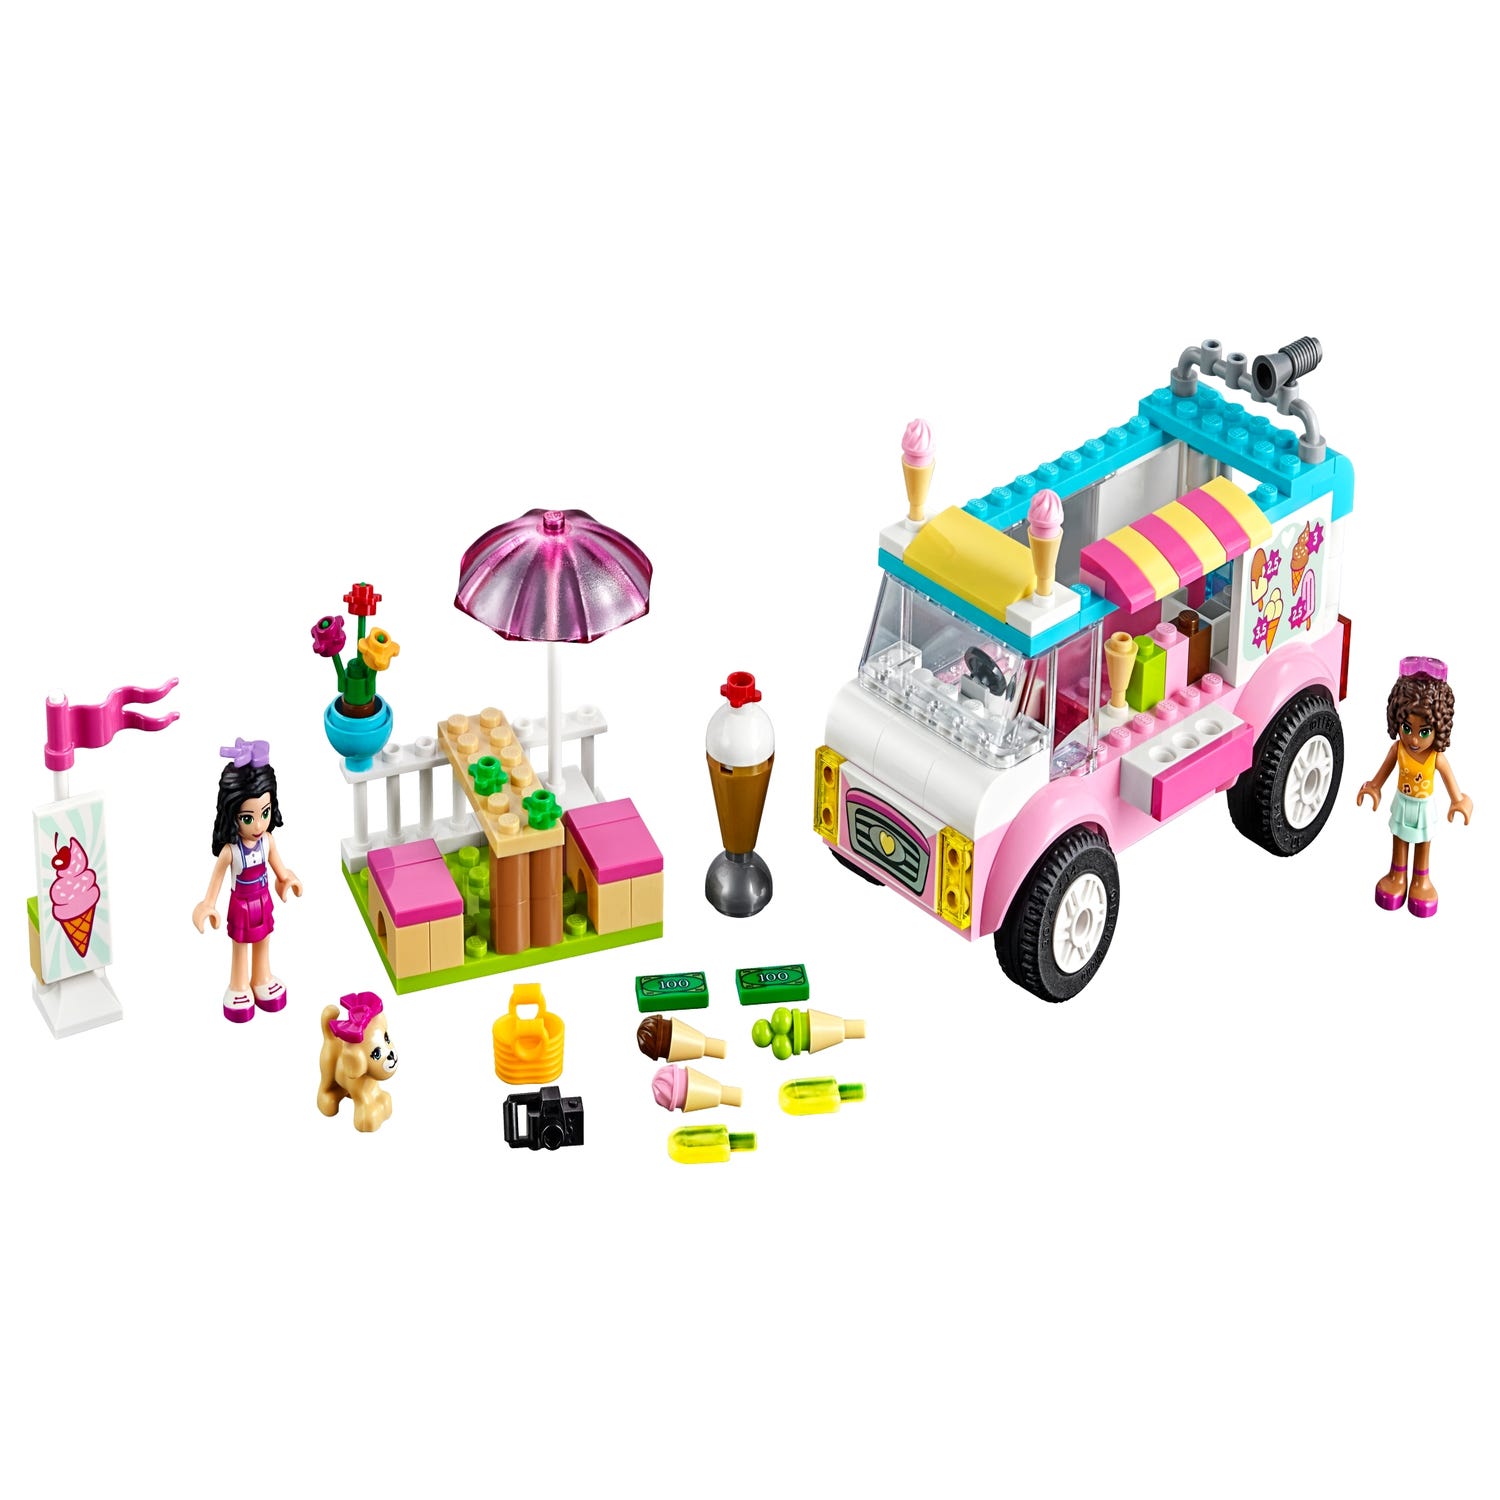 Lego 10727 - Juniors : La camionnette de glaces d'Emma - Comparer